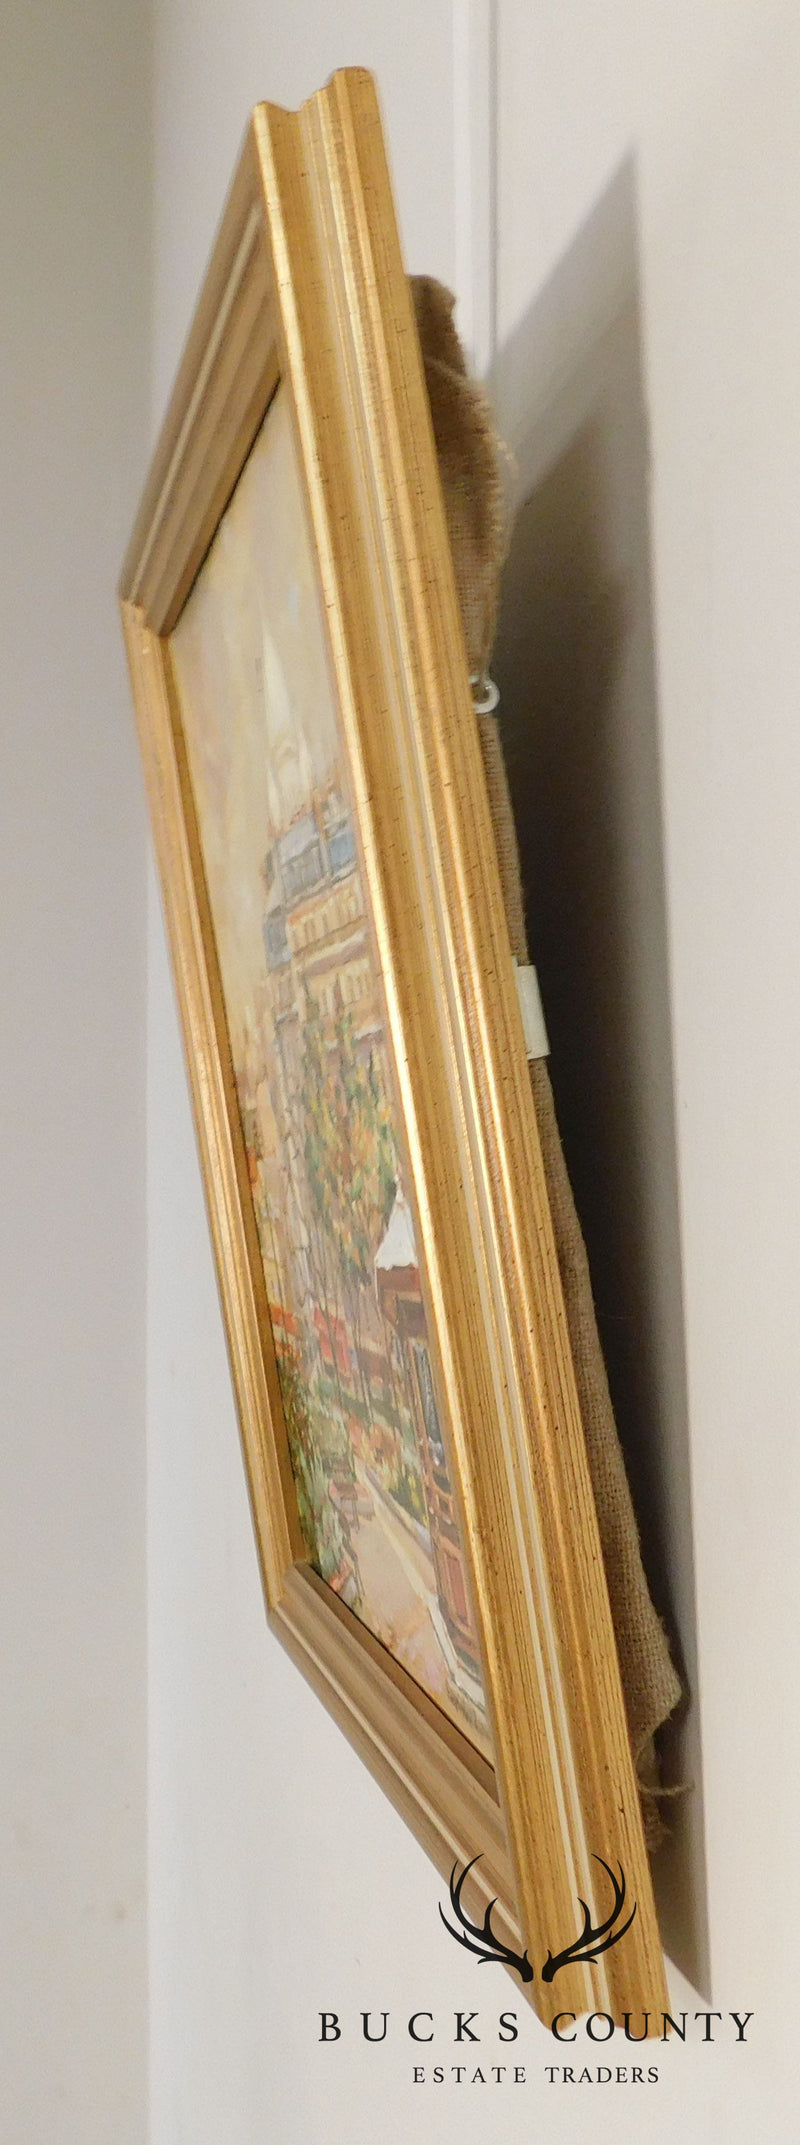 Branislan Zendelski "La Tonnelle II" Paris, Montmartre Oil on Canvas Framed